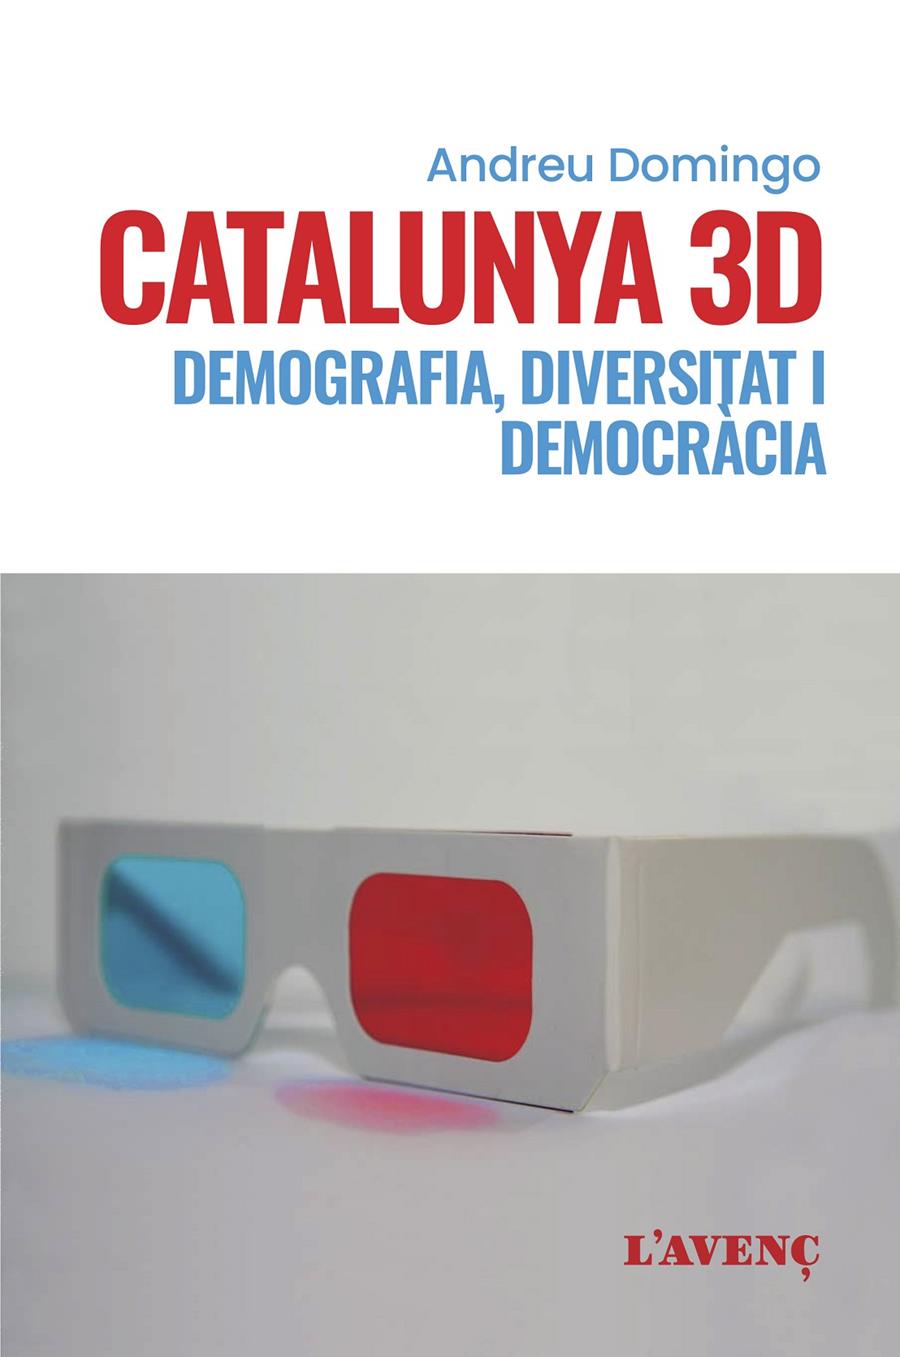 Catalunya 3D | Domingo, Andreu | Cooperativa autogestionària